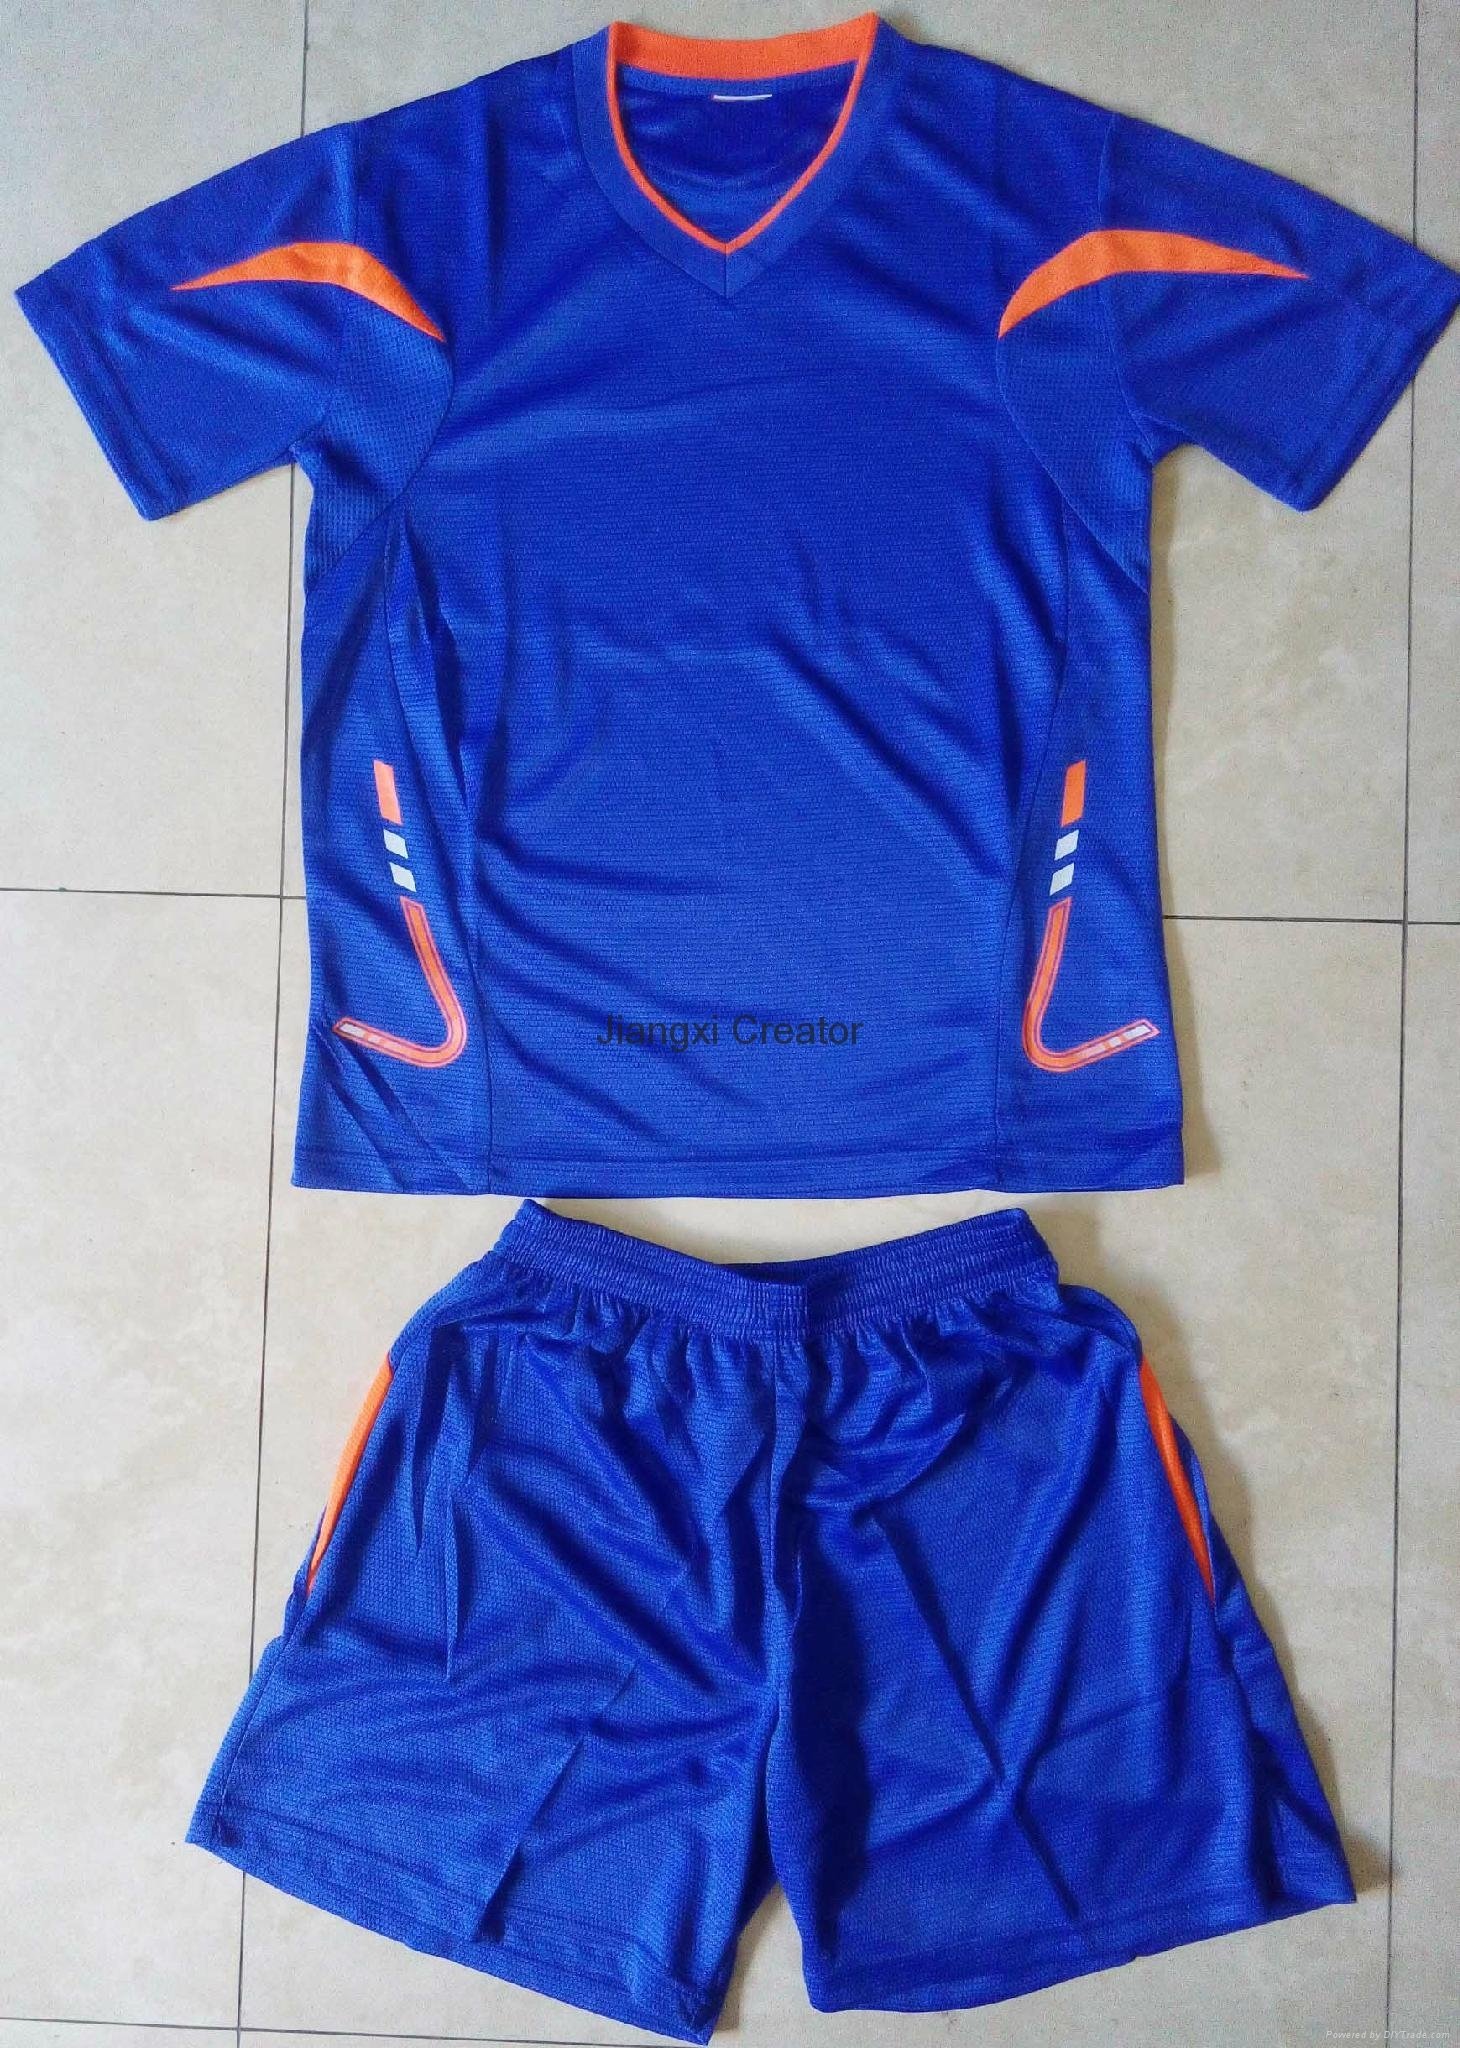 Geburtstagsgeschenk 7# Mbappé Fußball Jersey Anzug für Kinder-Beruf Forward Athletes Jersey Unisex Trainingshemden Mesh Schnelltrocknend Kurzarm Fans Sweatshirt